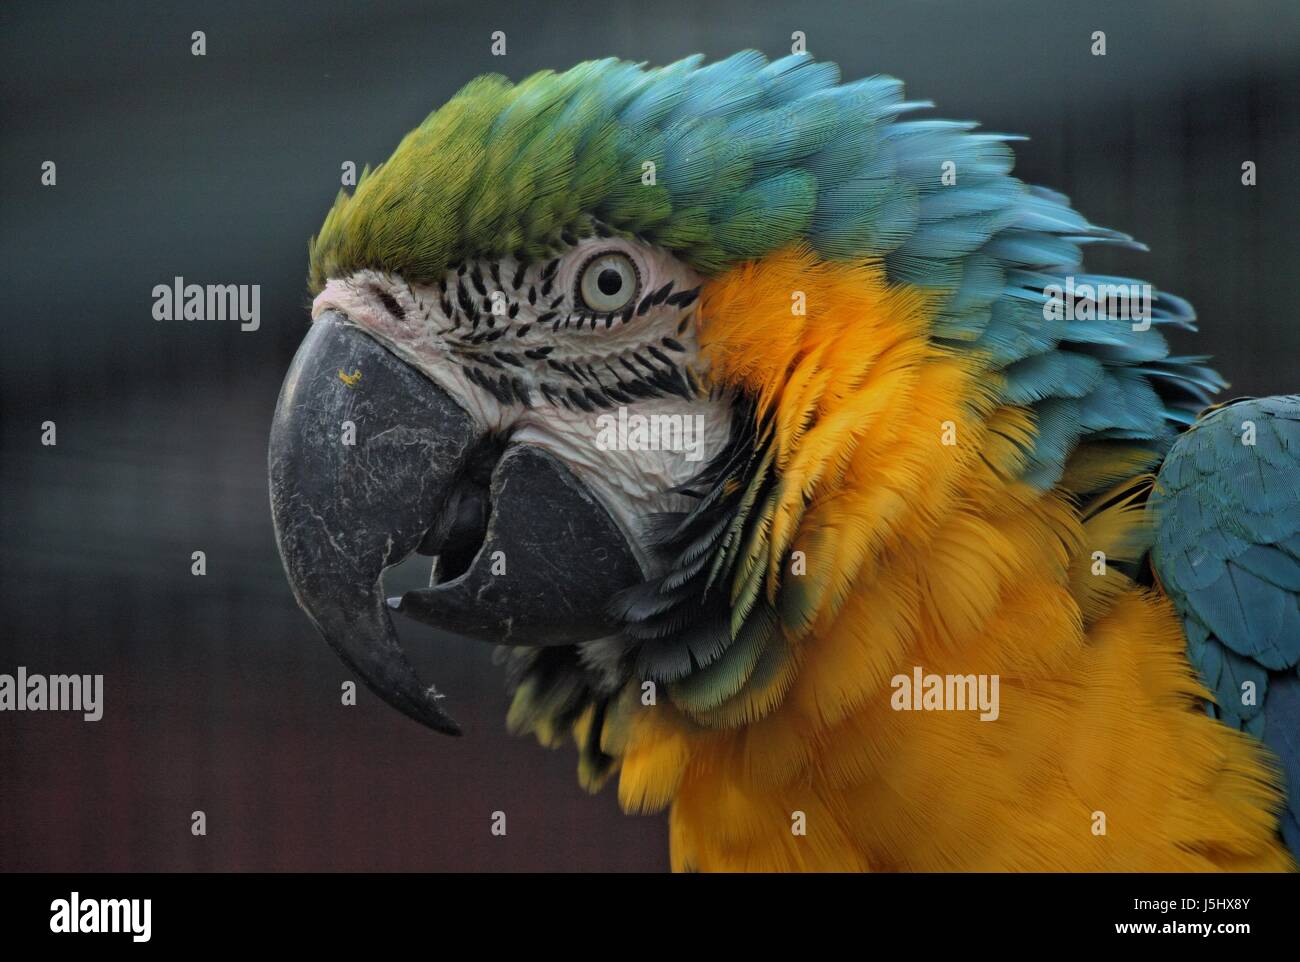 Animaux Animaux oiseaux oiseaux d'organes oeil portrait plumes pied Amérique Brésil bec Banque D'Images